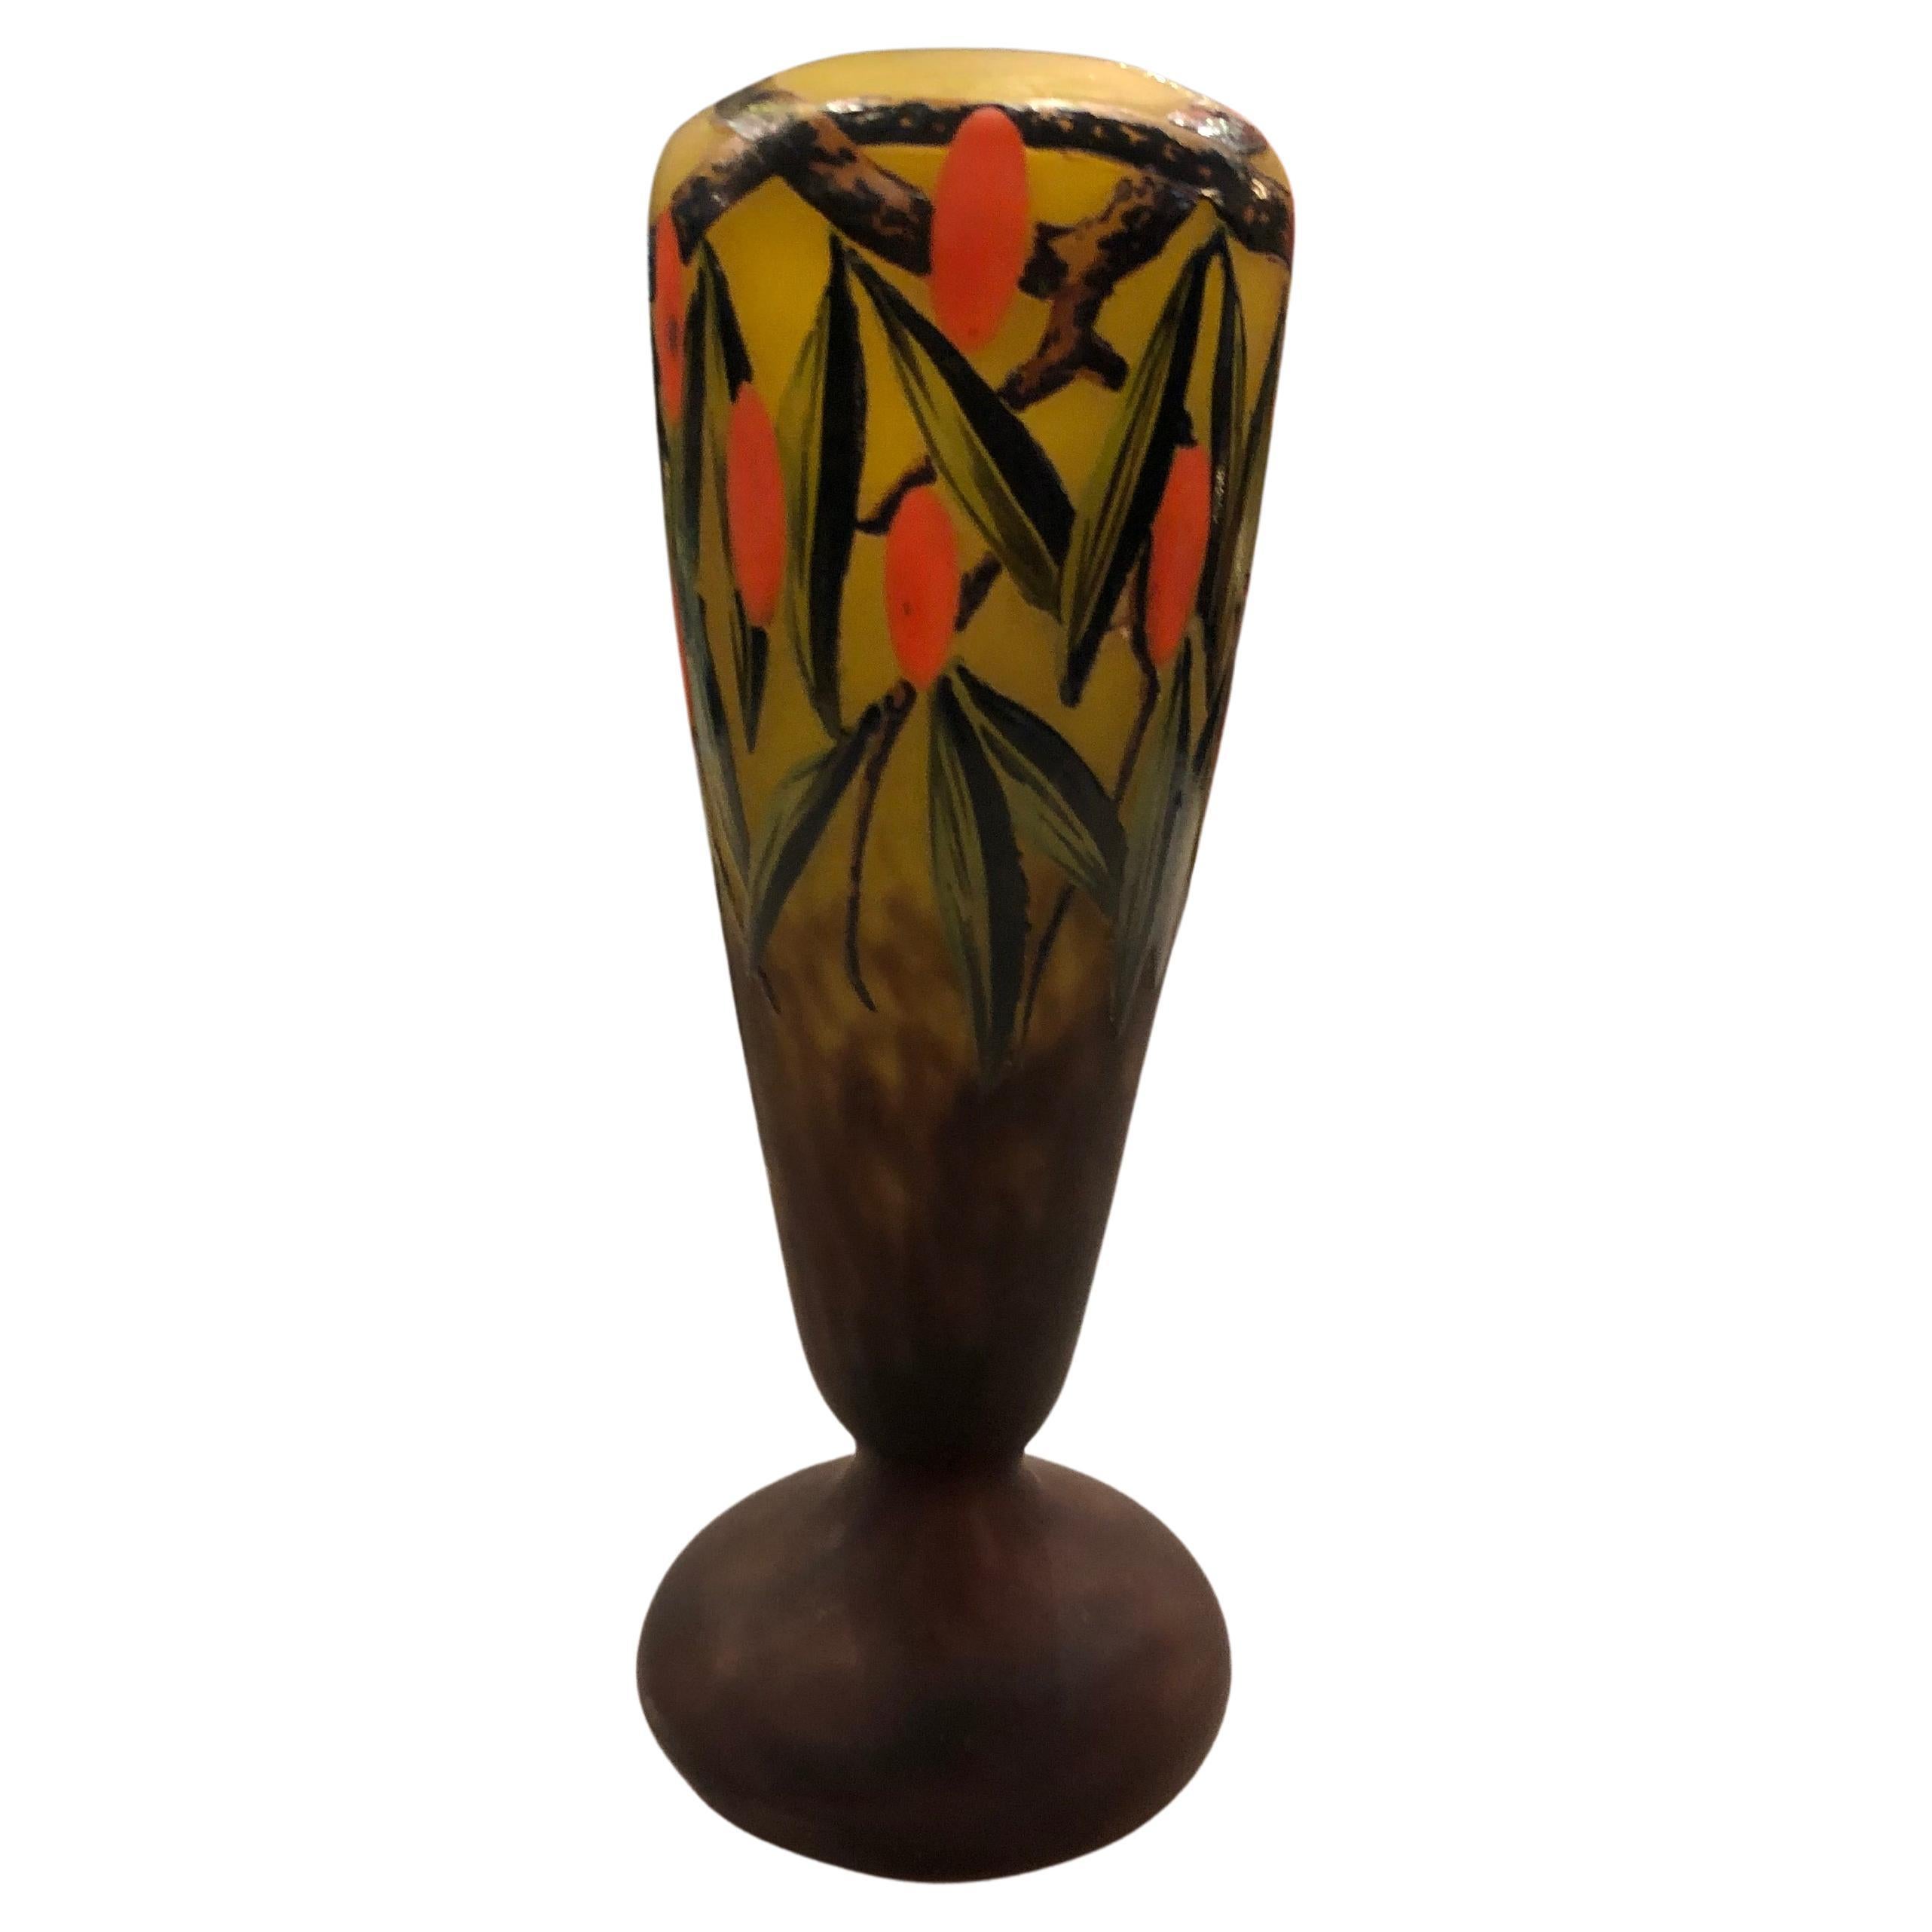 Signature du vase : Schneider, avec émail, 1920, Style : Art déco, (design : Arbousiers)